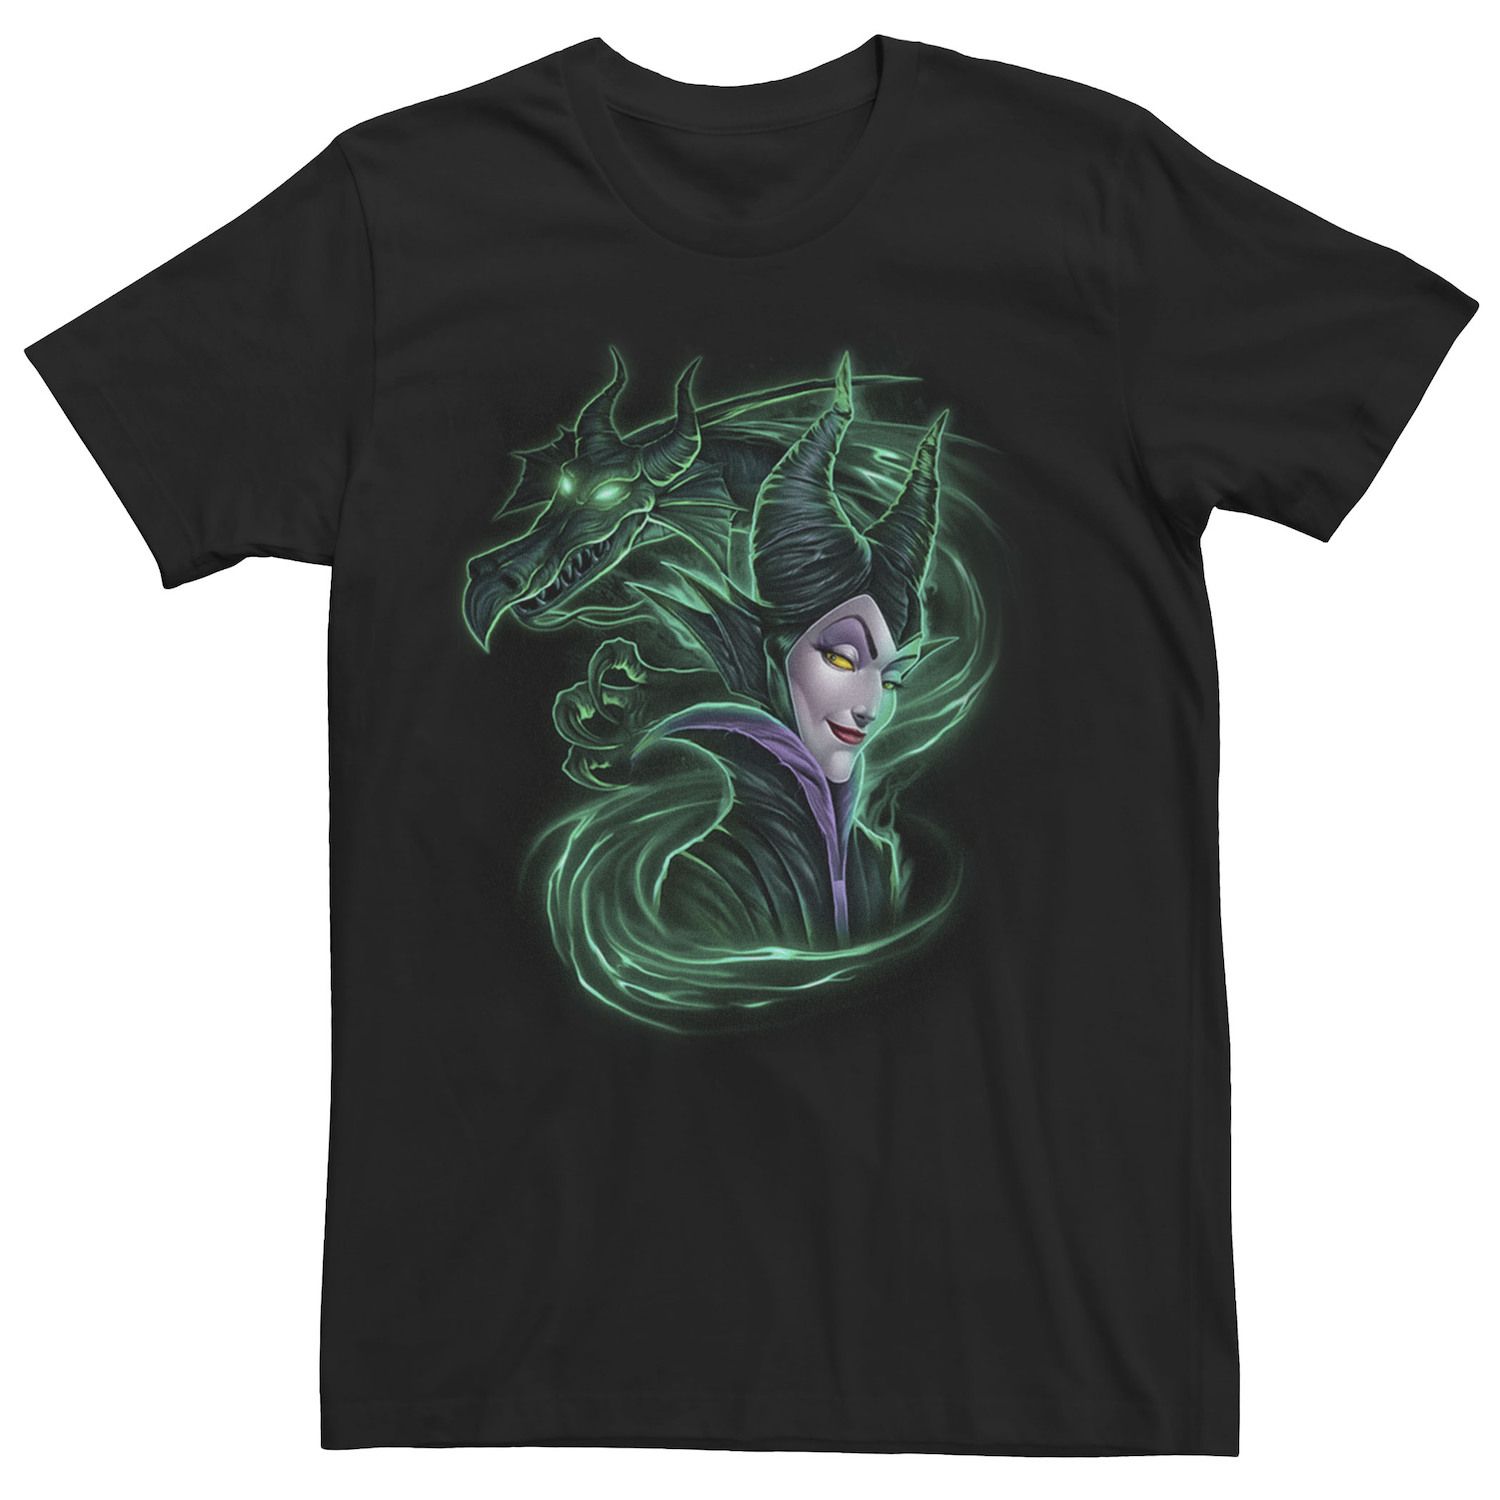 Мужская футболка Sleeping Beauty Maleficent Dark Magic Disney цена и фото